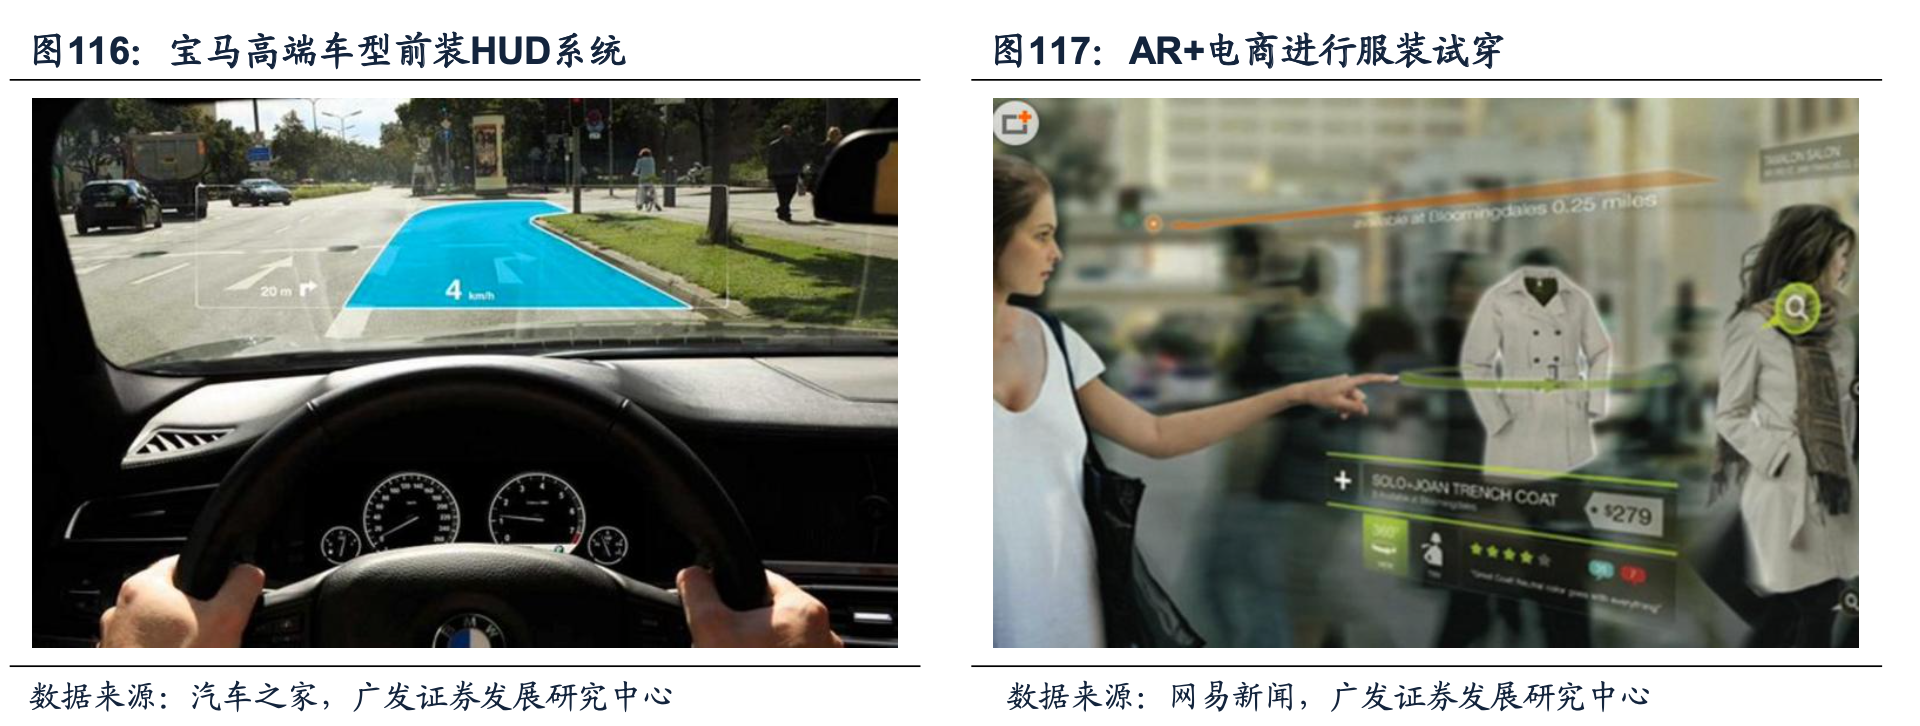 AR全息技術AR HUD汽車導航未來趨勢